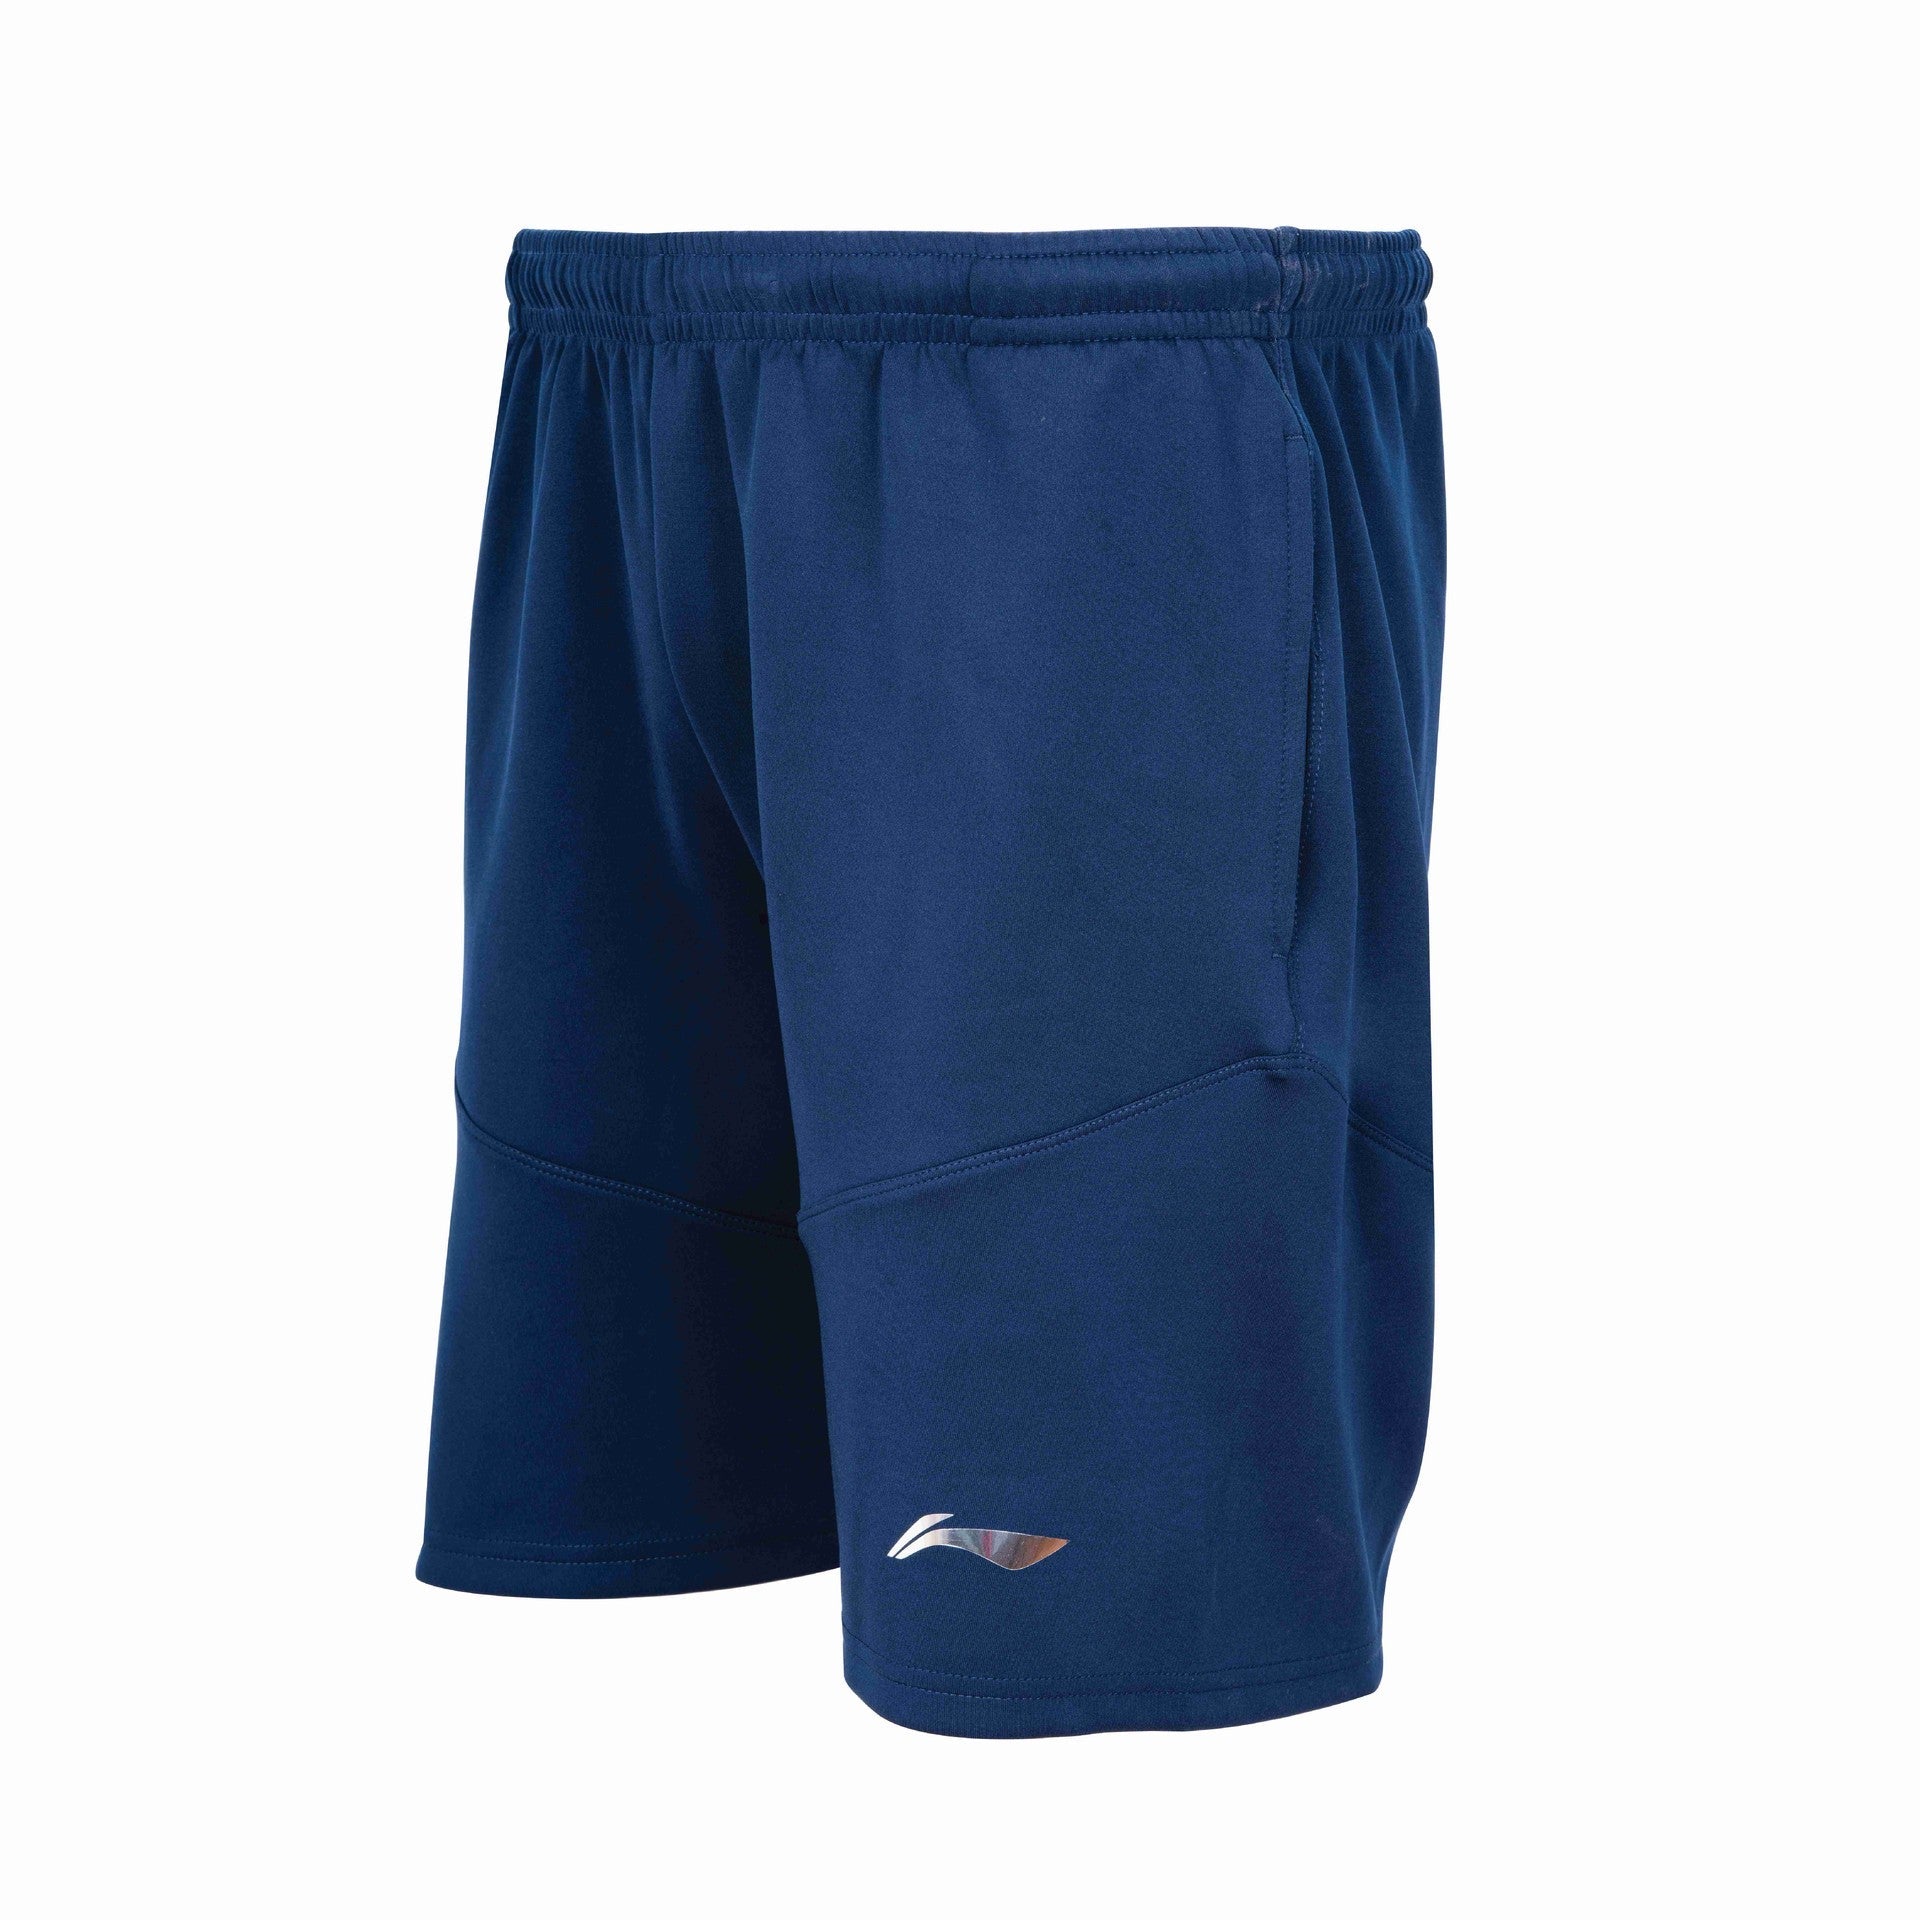 Li-Ning Men's Dazzler Shorts Extra Large (Navy Blue)